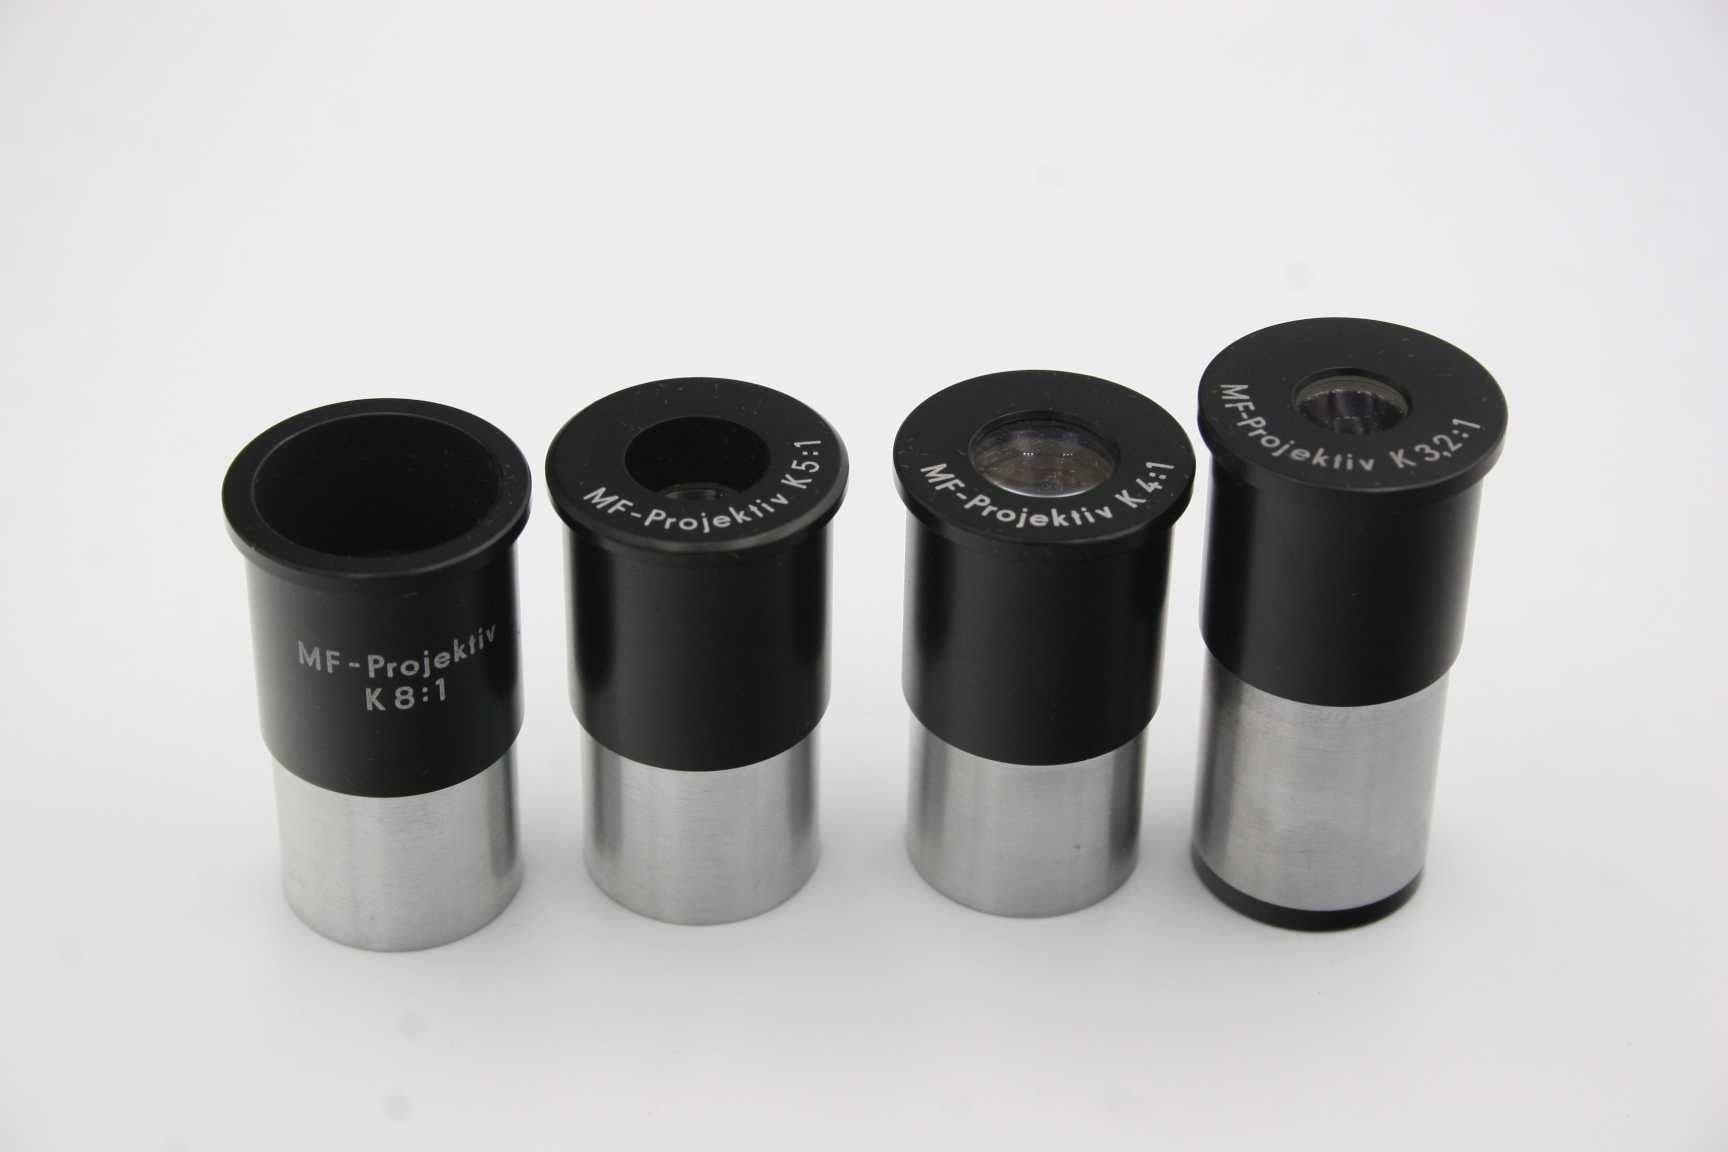 Oryginalny okular mikroskopowy MF-Projektiv K 8:1 Carl Zeiss Jena